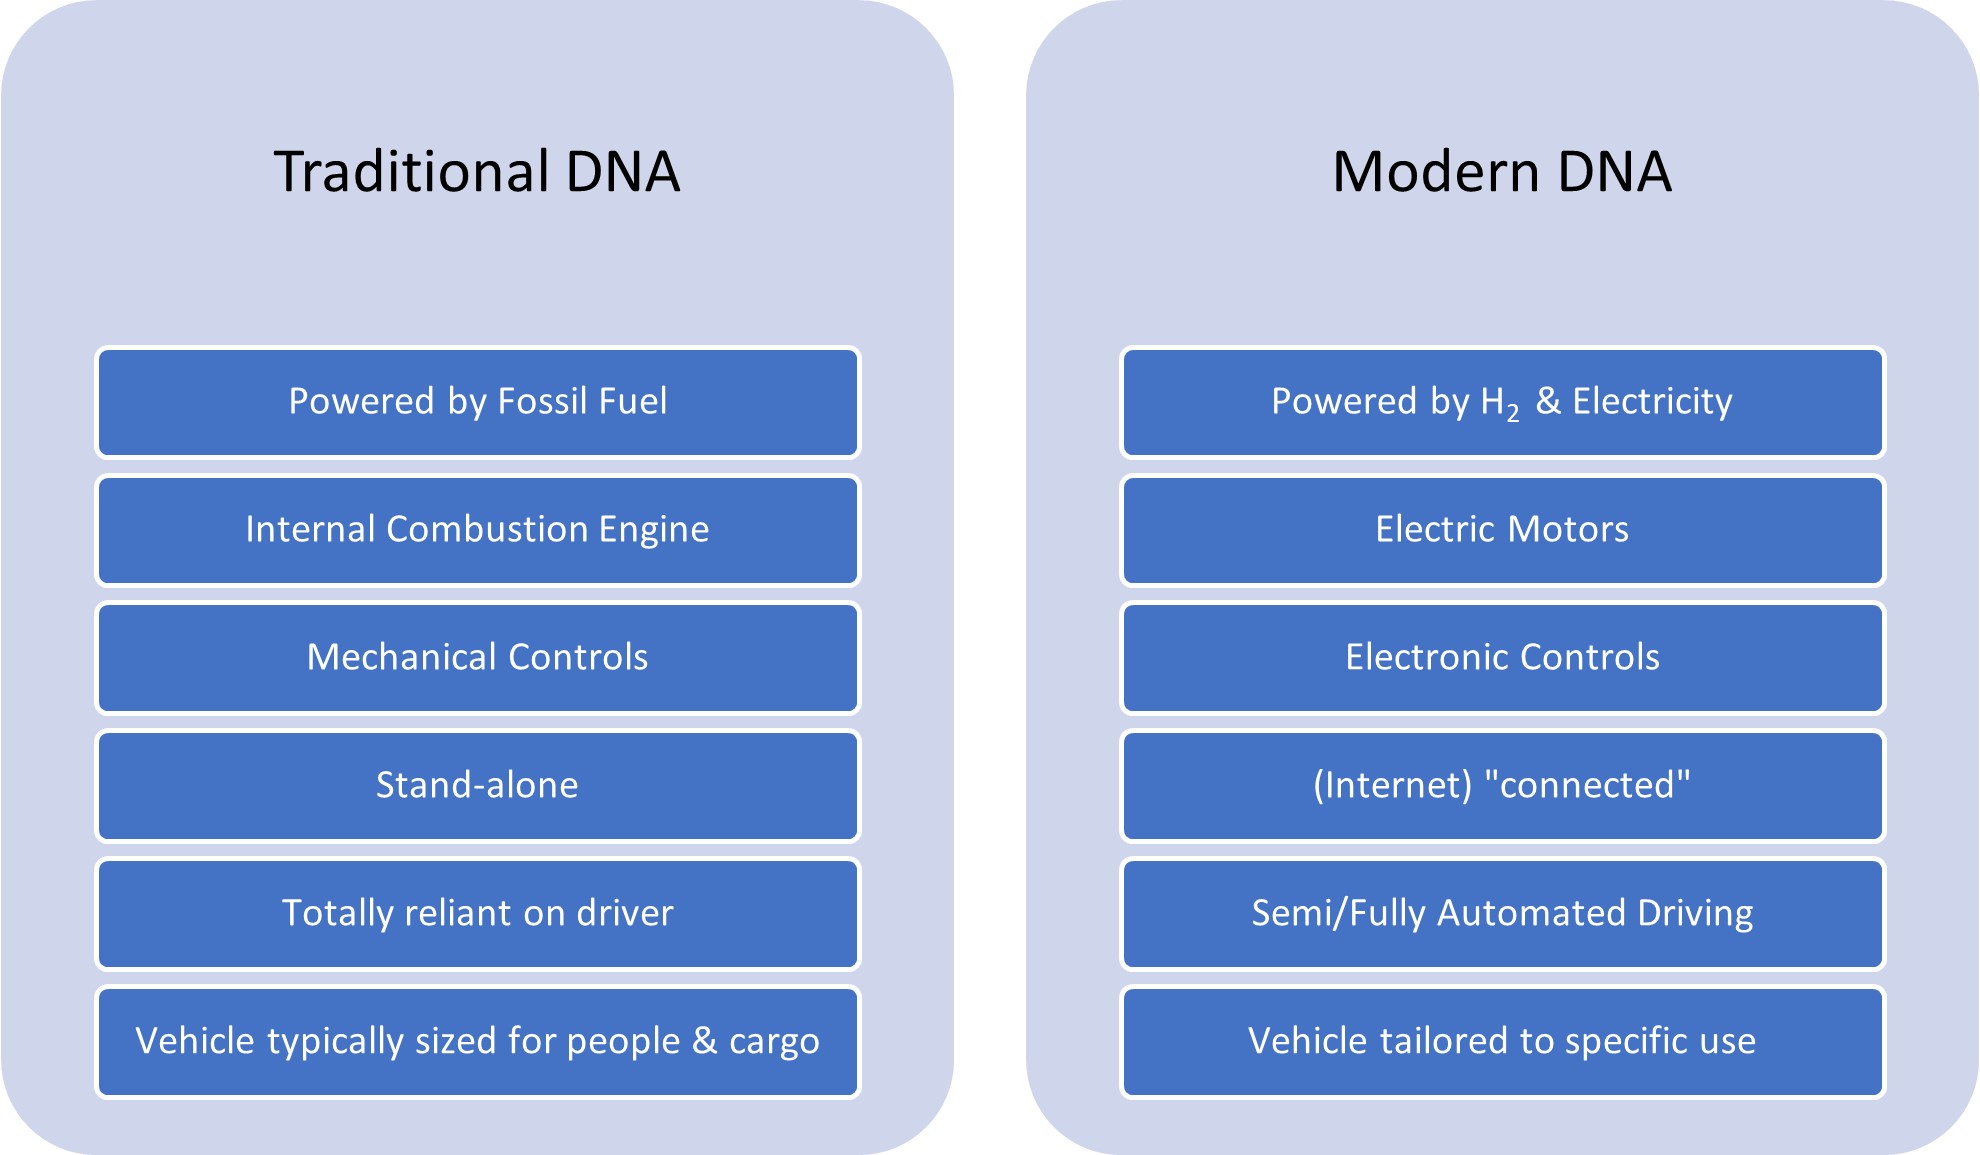 Cambiando el ADN de los automóviles.